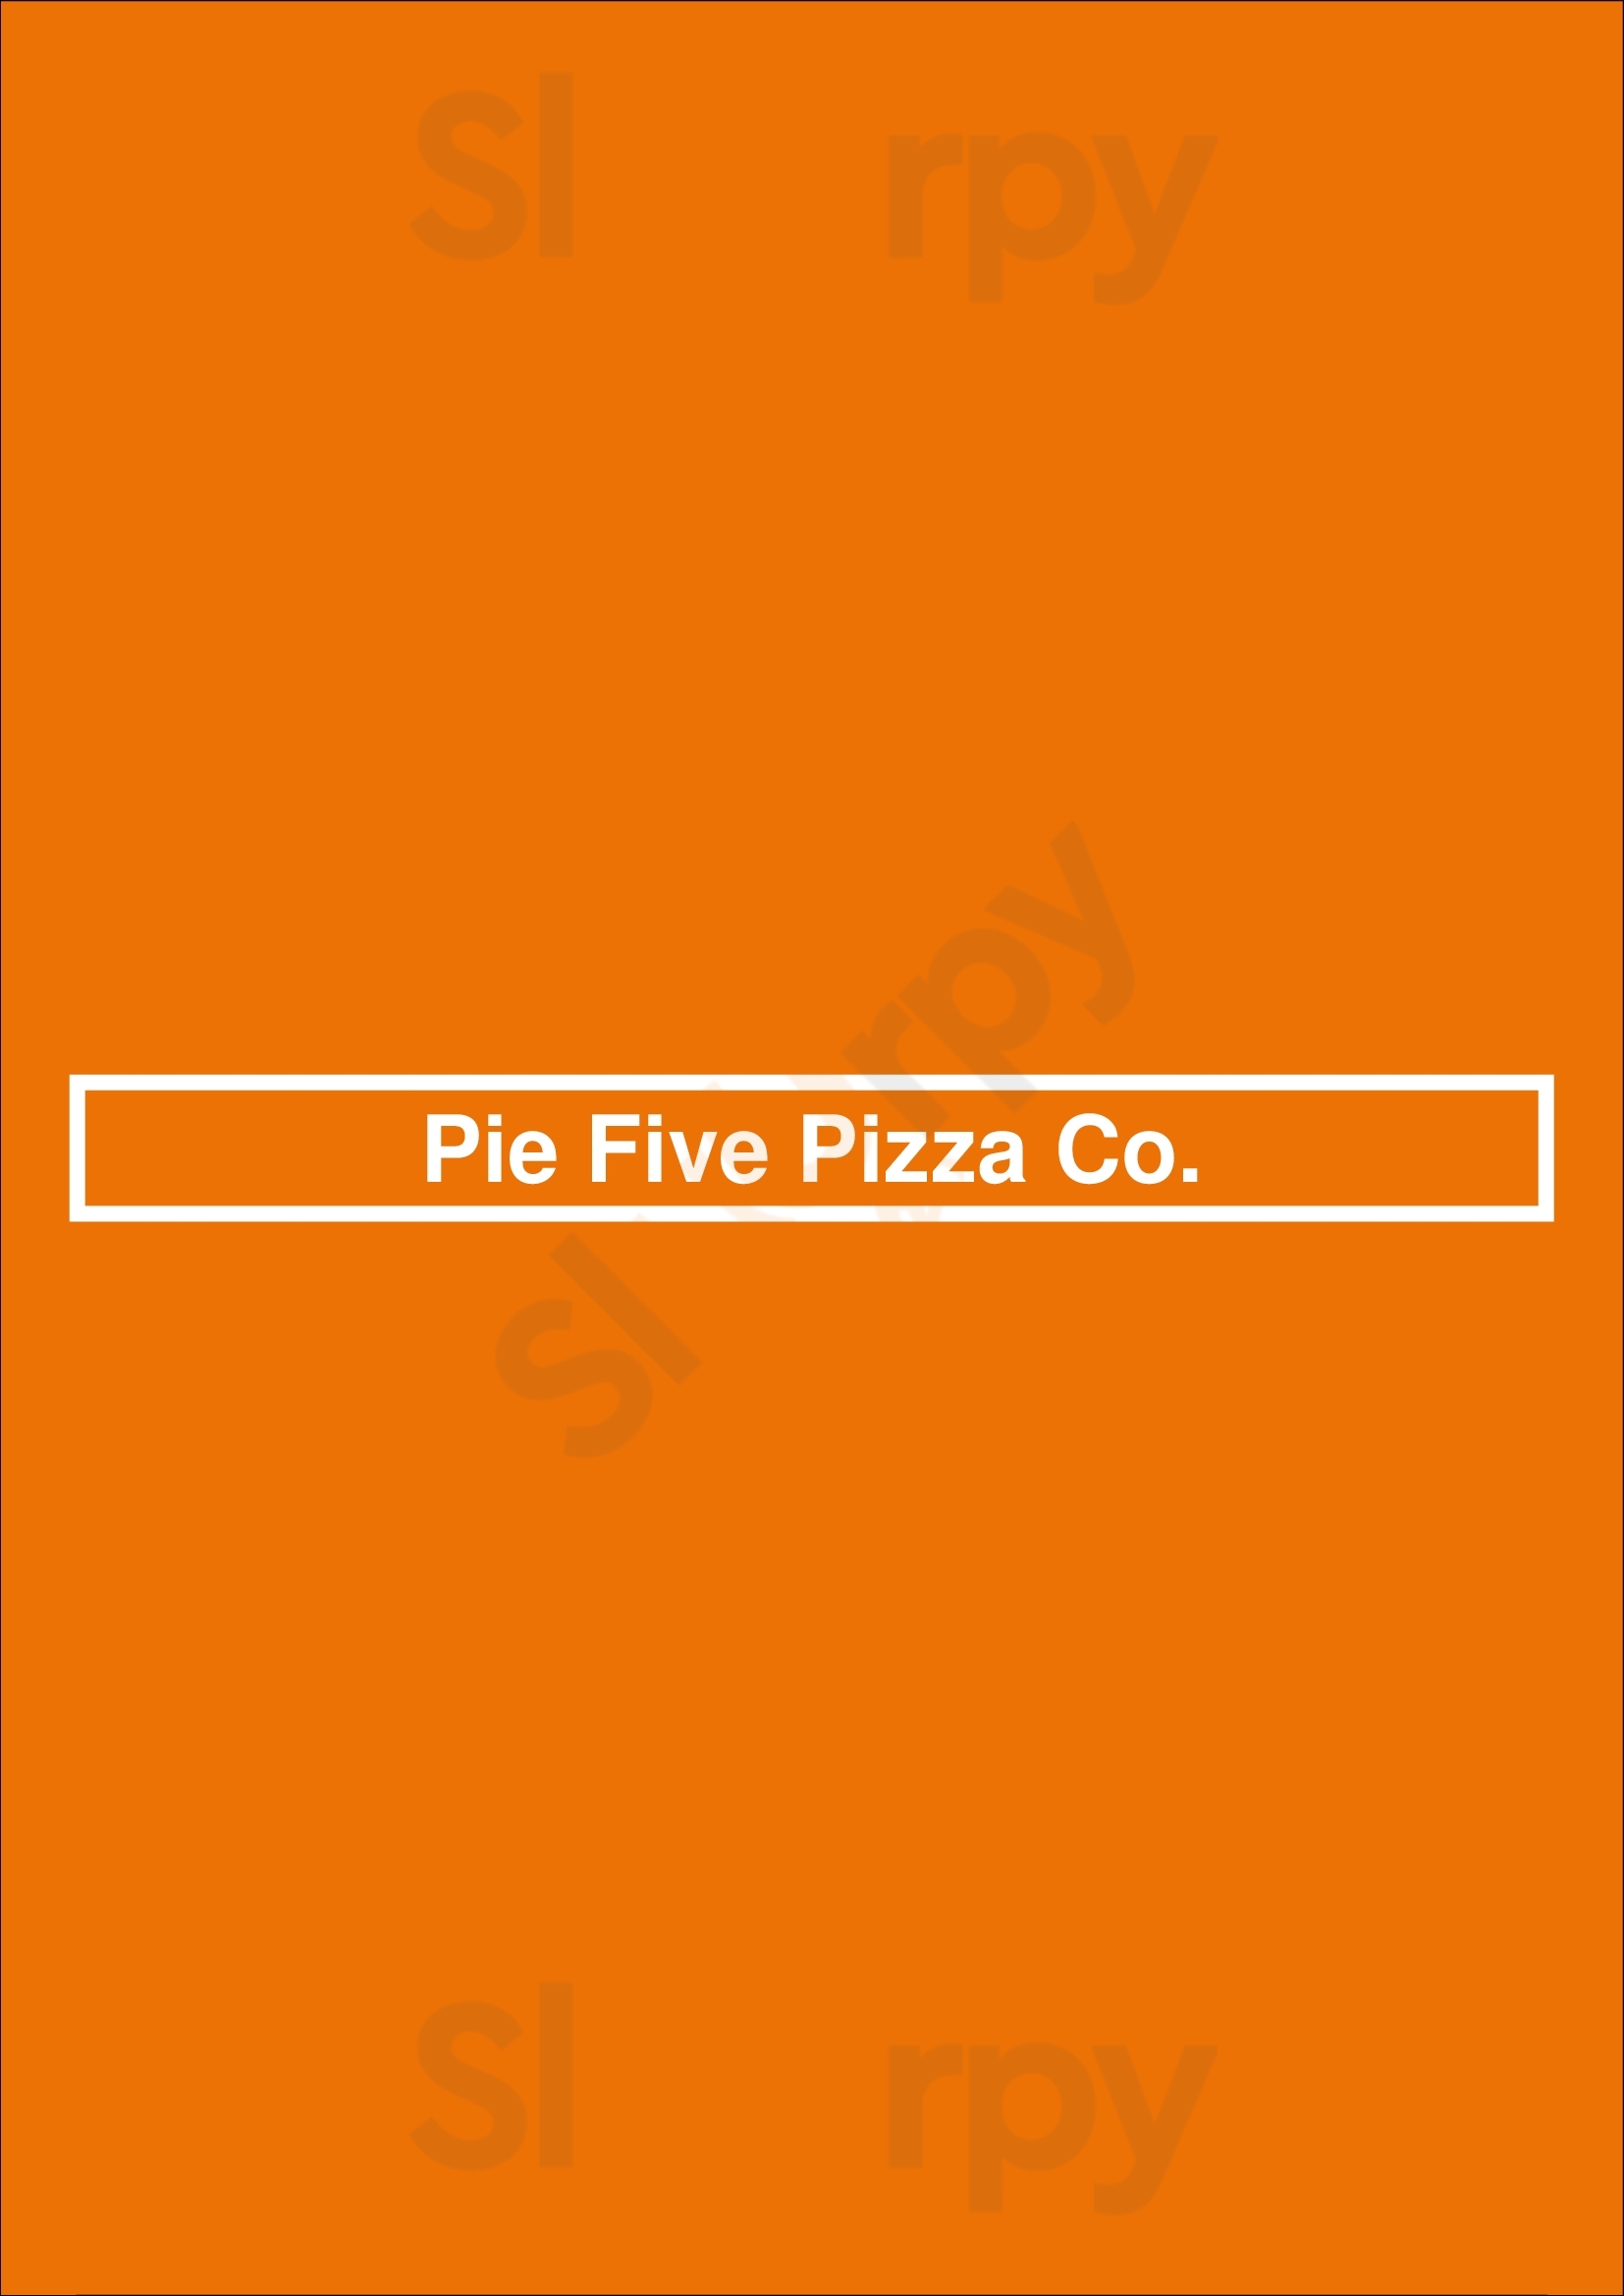 Pie Five Pizza Co. Lexington Menu - 1